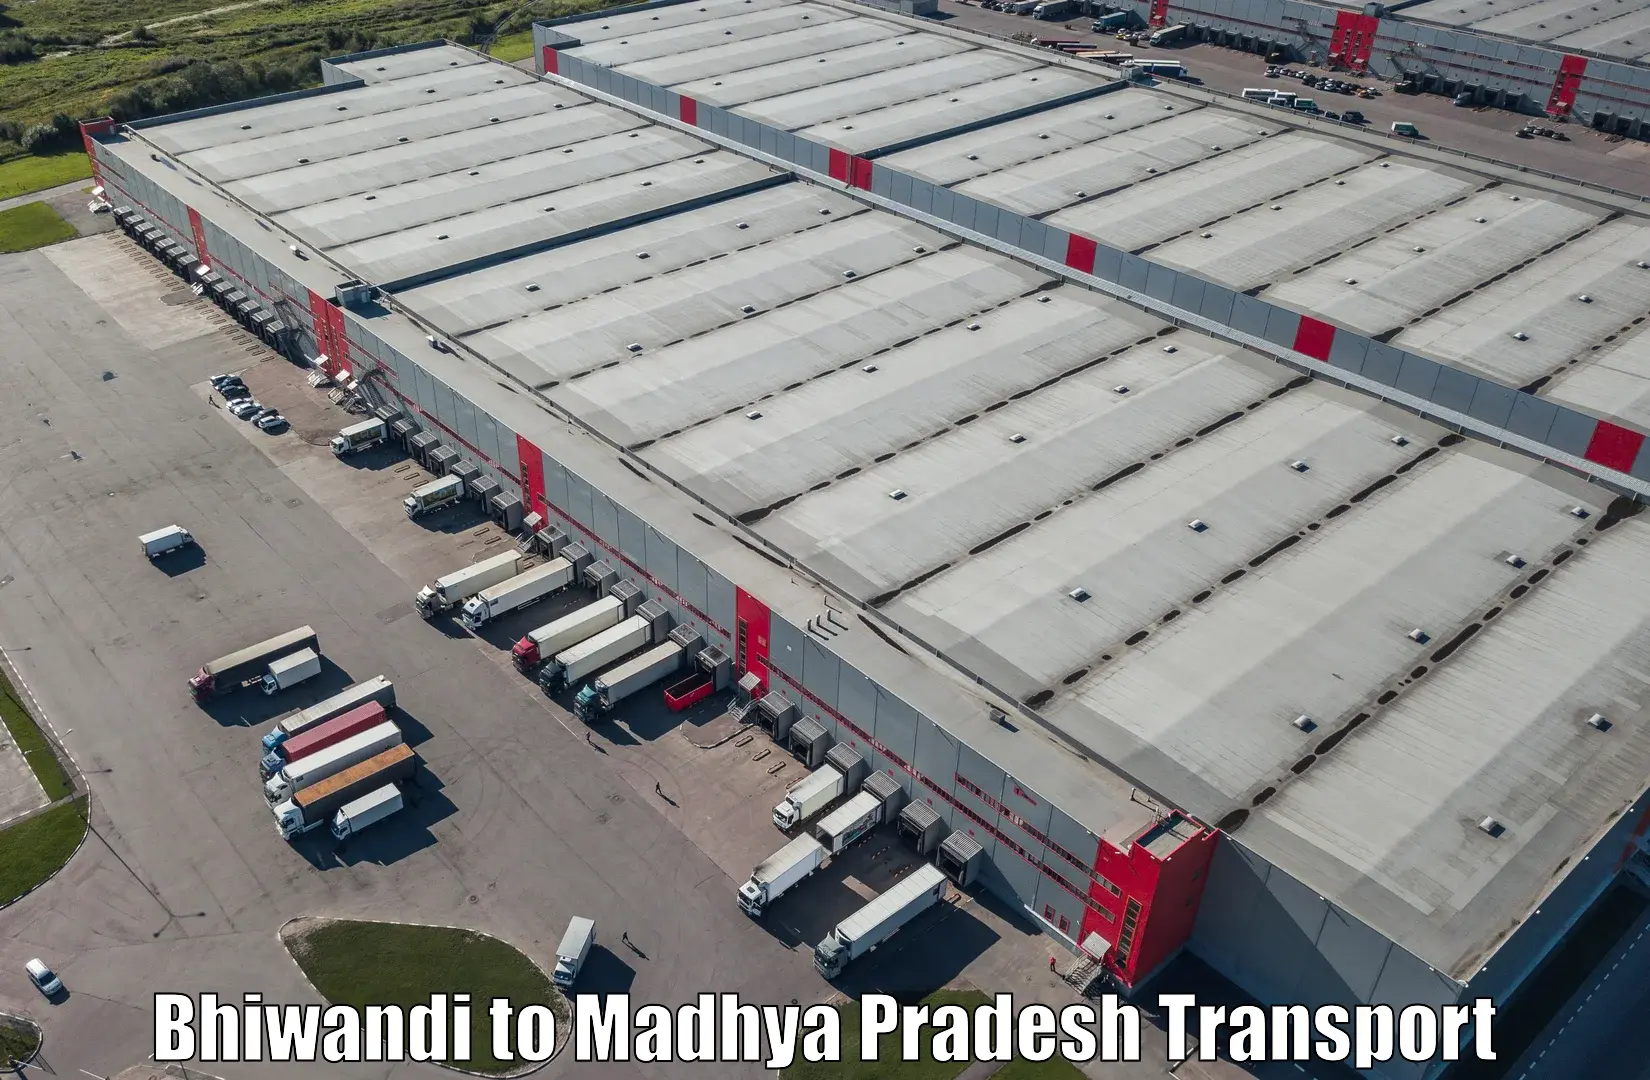 Furniture transport service Bhiwandi to Rampur Naikin